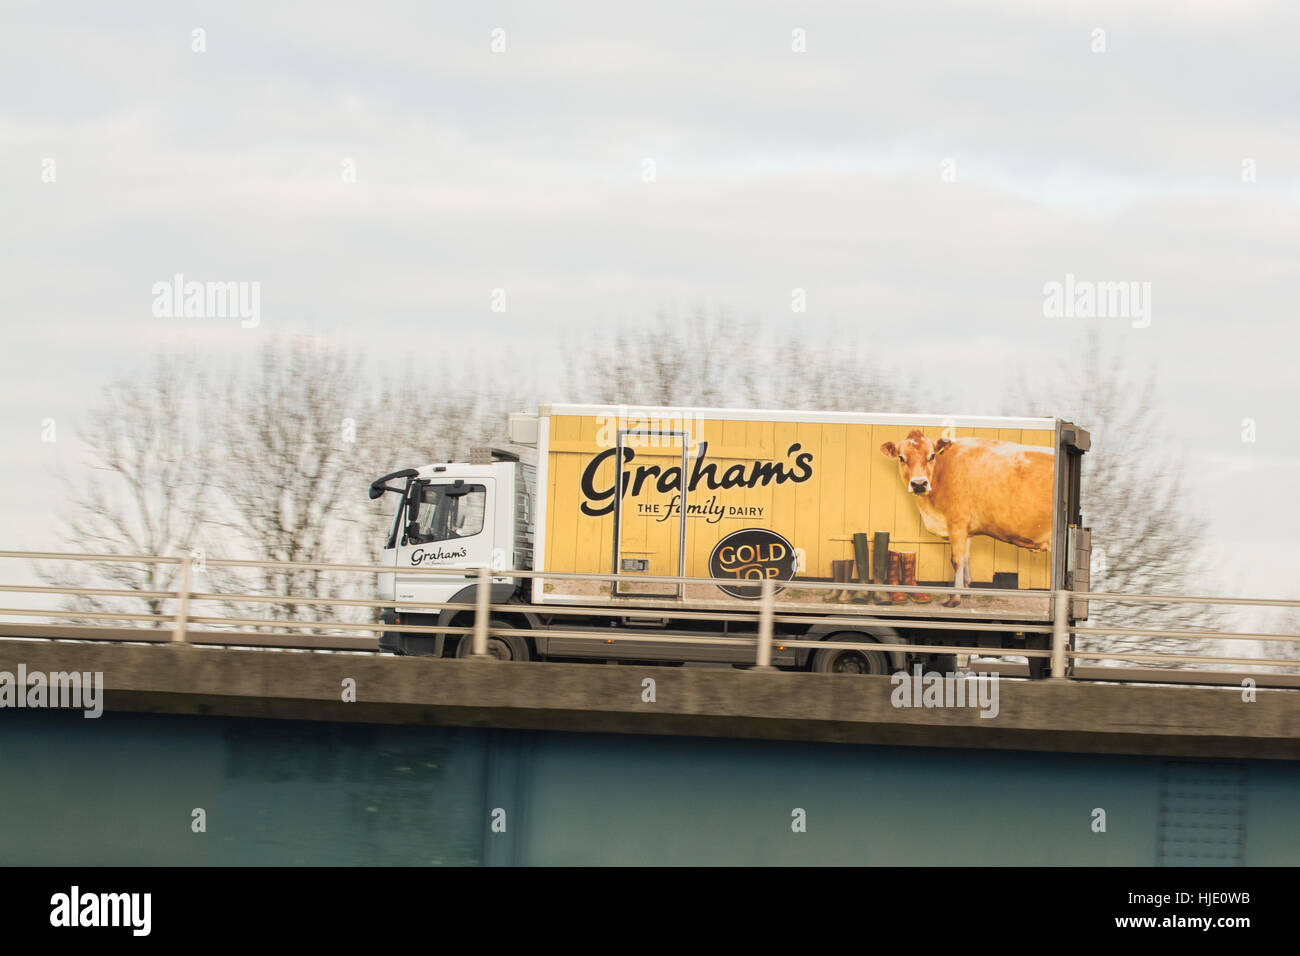 Graham's Dairy camion de livraison avec de l'or haut publicité - Écosse, Royaume-Uni Banque D'Images